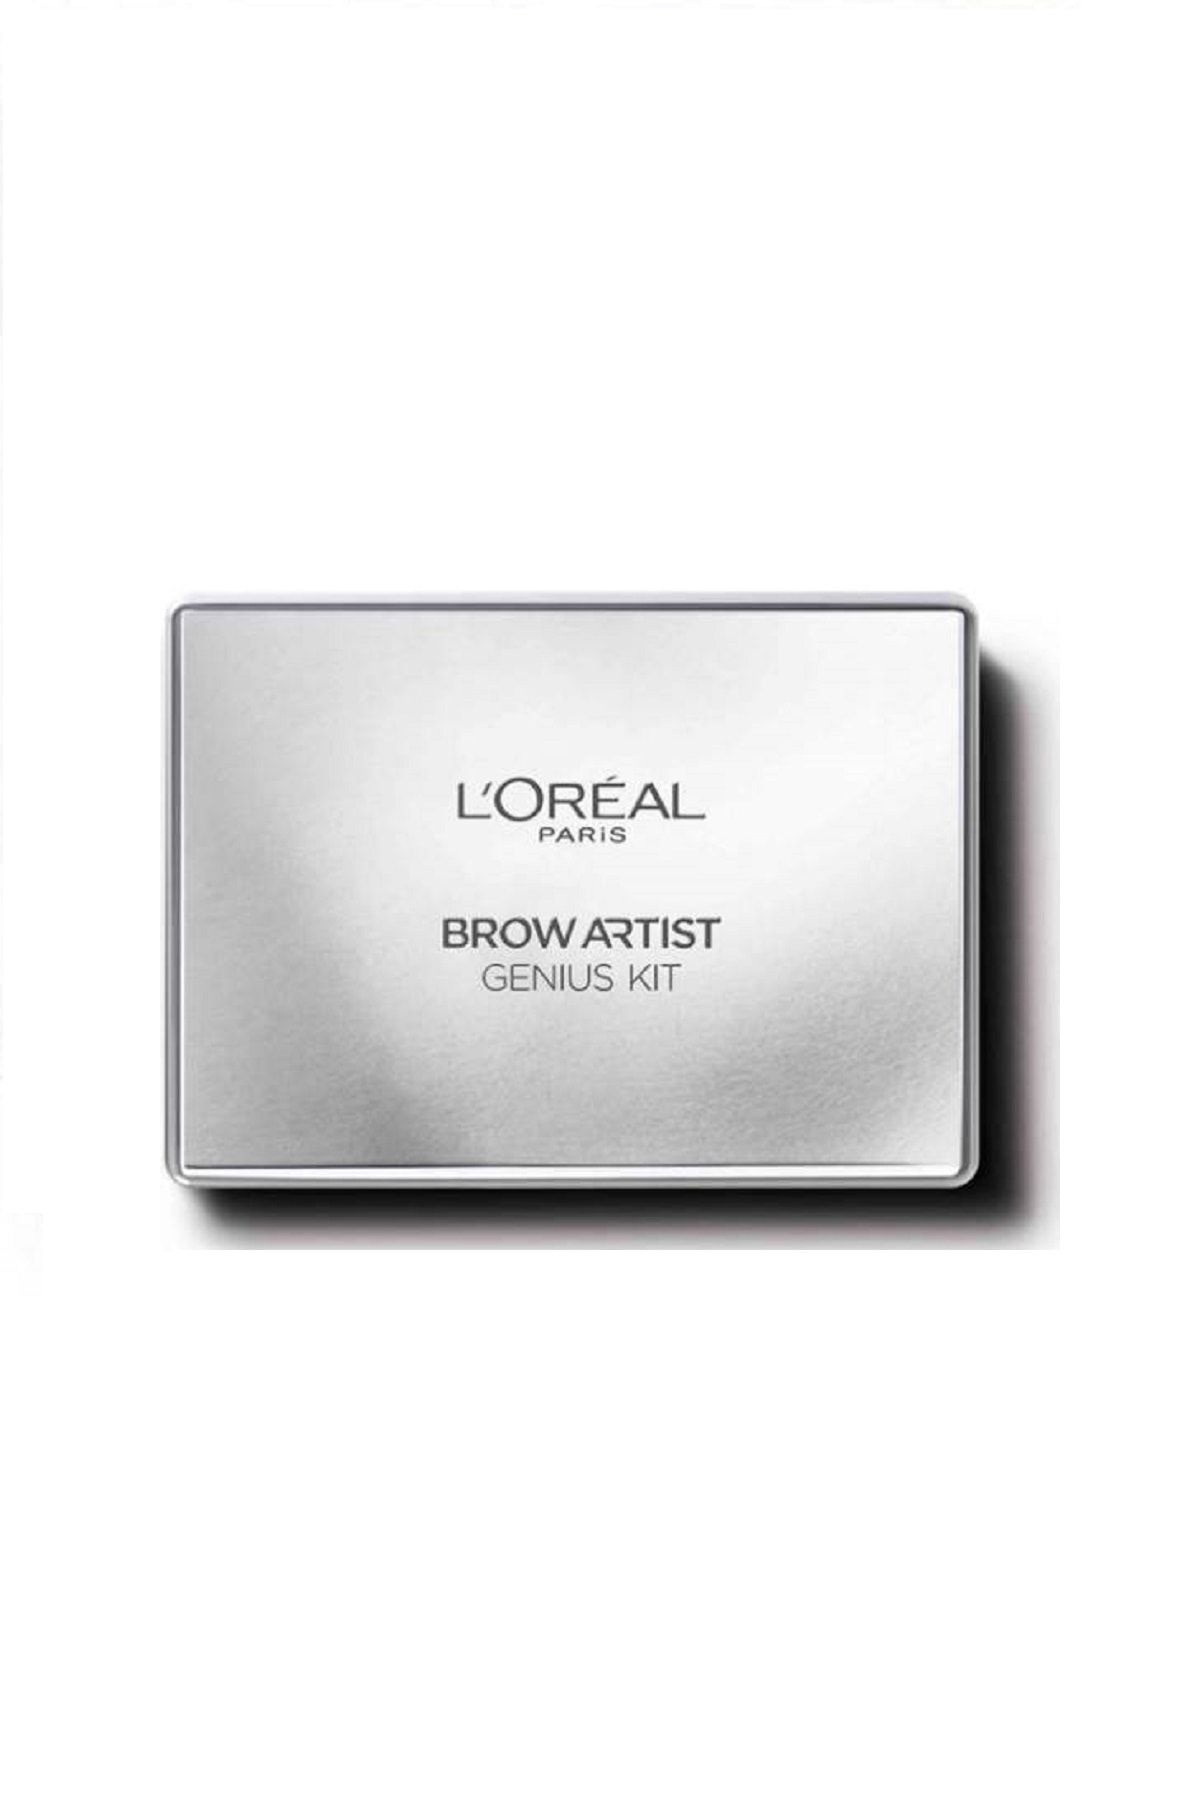 L'Oreal Paris Kaş Kiti Açık Brow Artist Genius Kit 01 Light To Medium Orta Ton 3600522832621